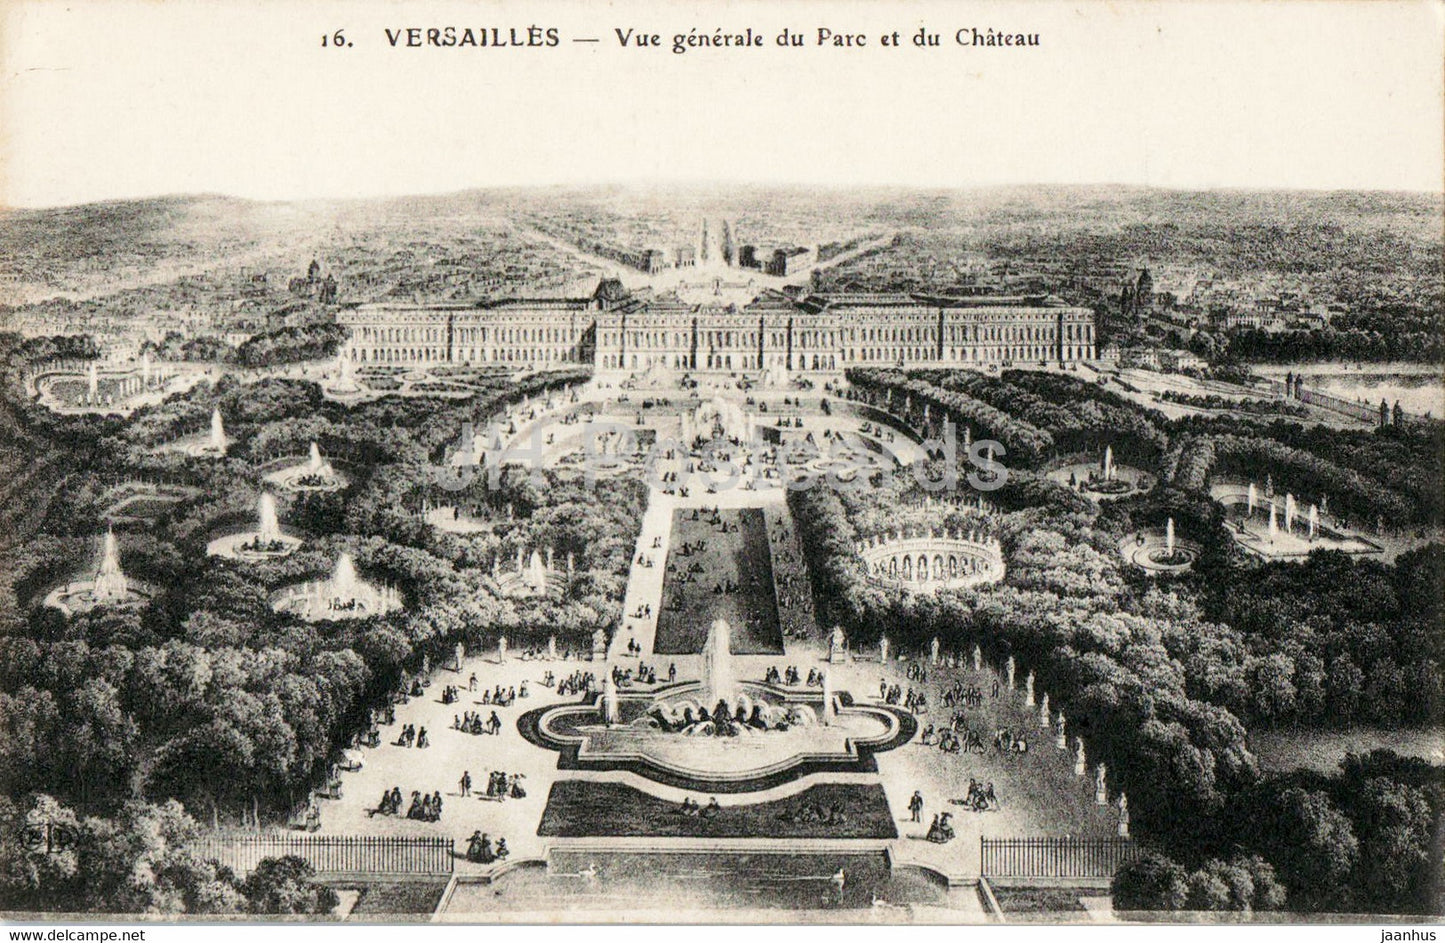 Versailles - Vue Generale du Parc et du Chateau - 16 - illustration - old postcard - France - unused - JH Postcards